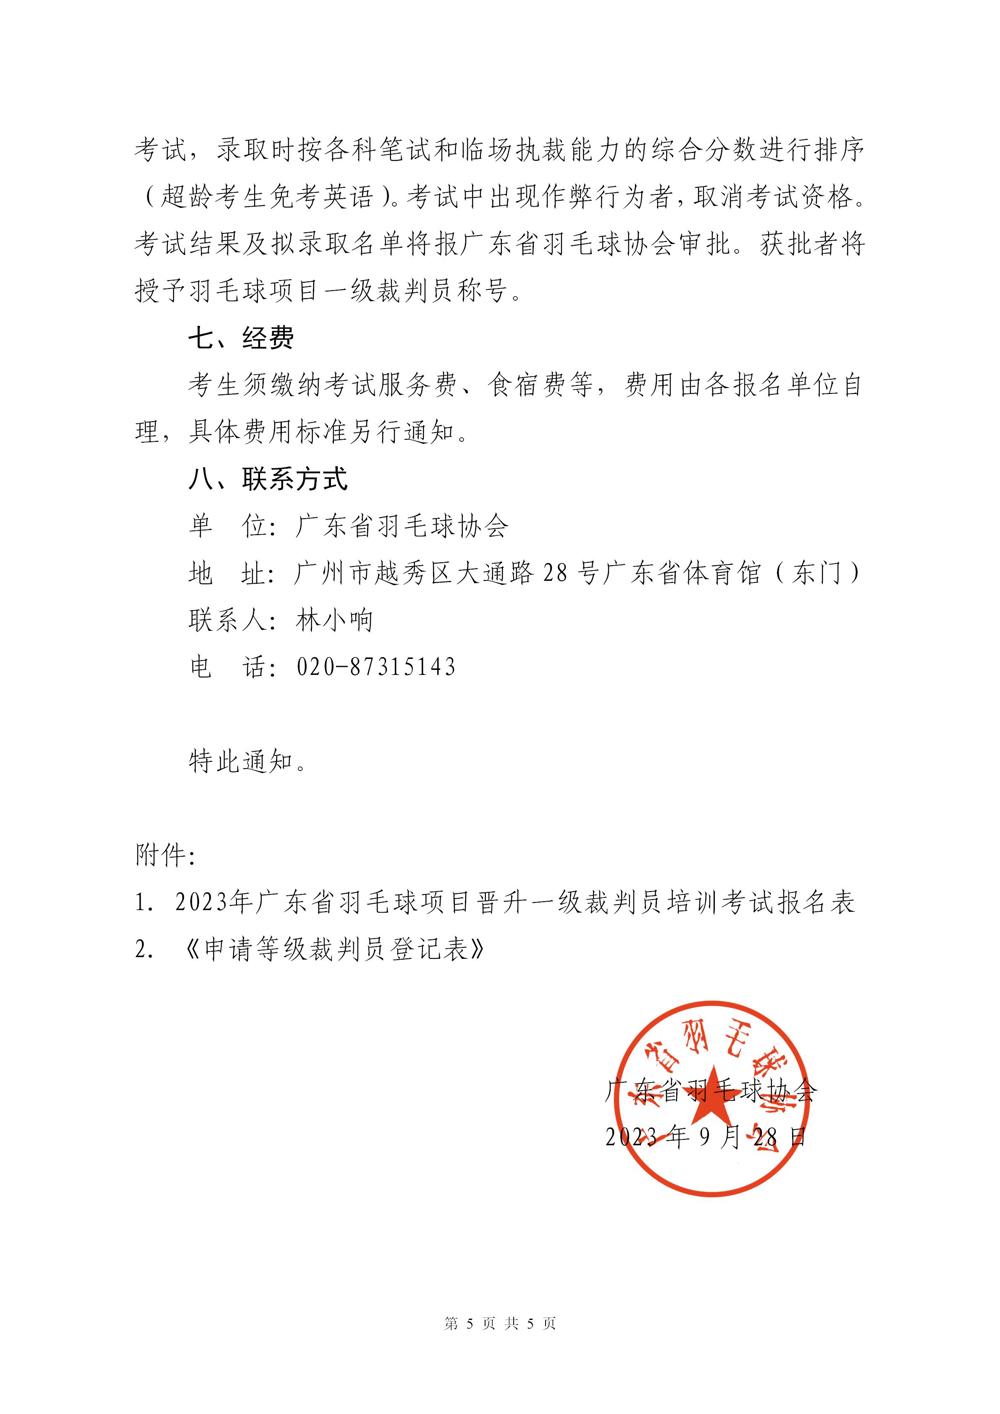 关于2023年广东省羽毛球项目晋升一级裁判员的通知(2)_05